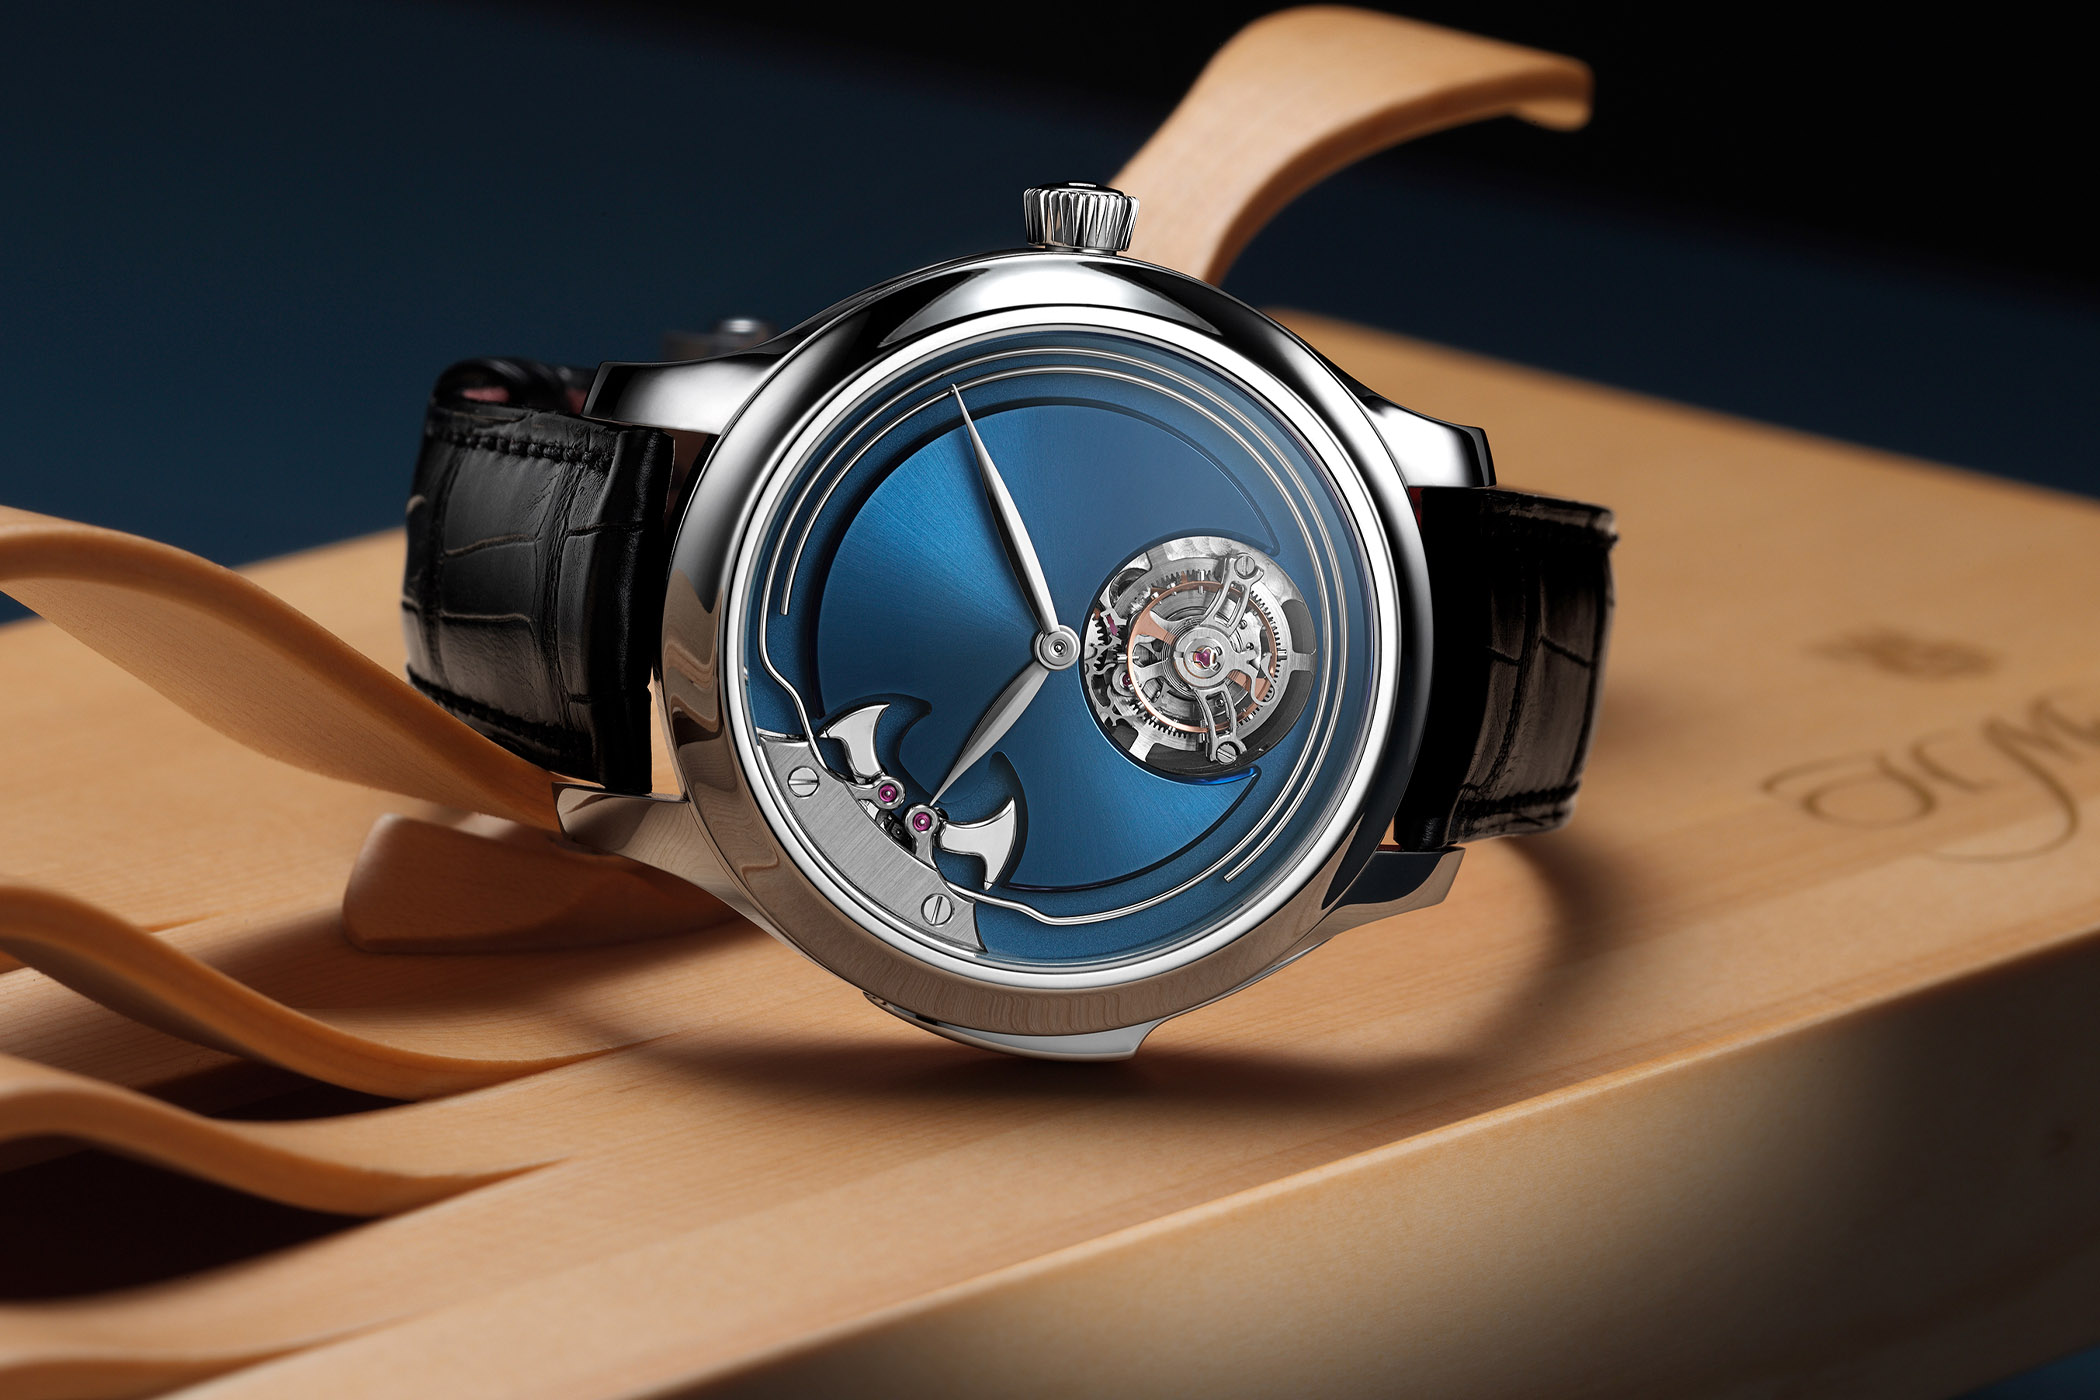 H. Moser & Cie. Endeavour Concept Minute Repeater Tourbillon titanium blue dial